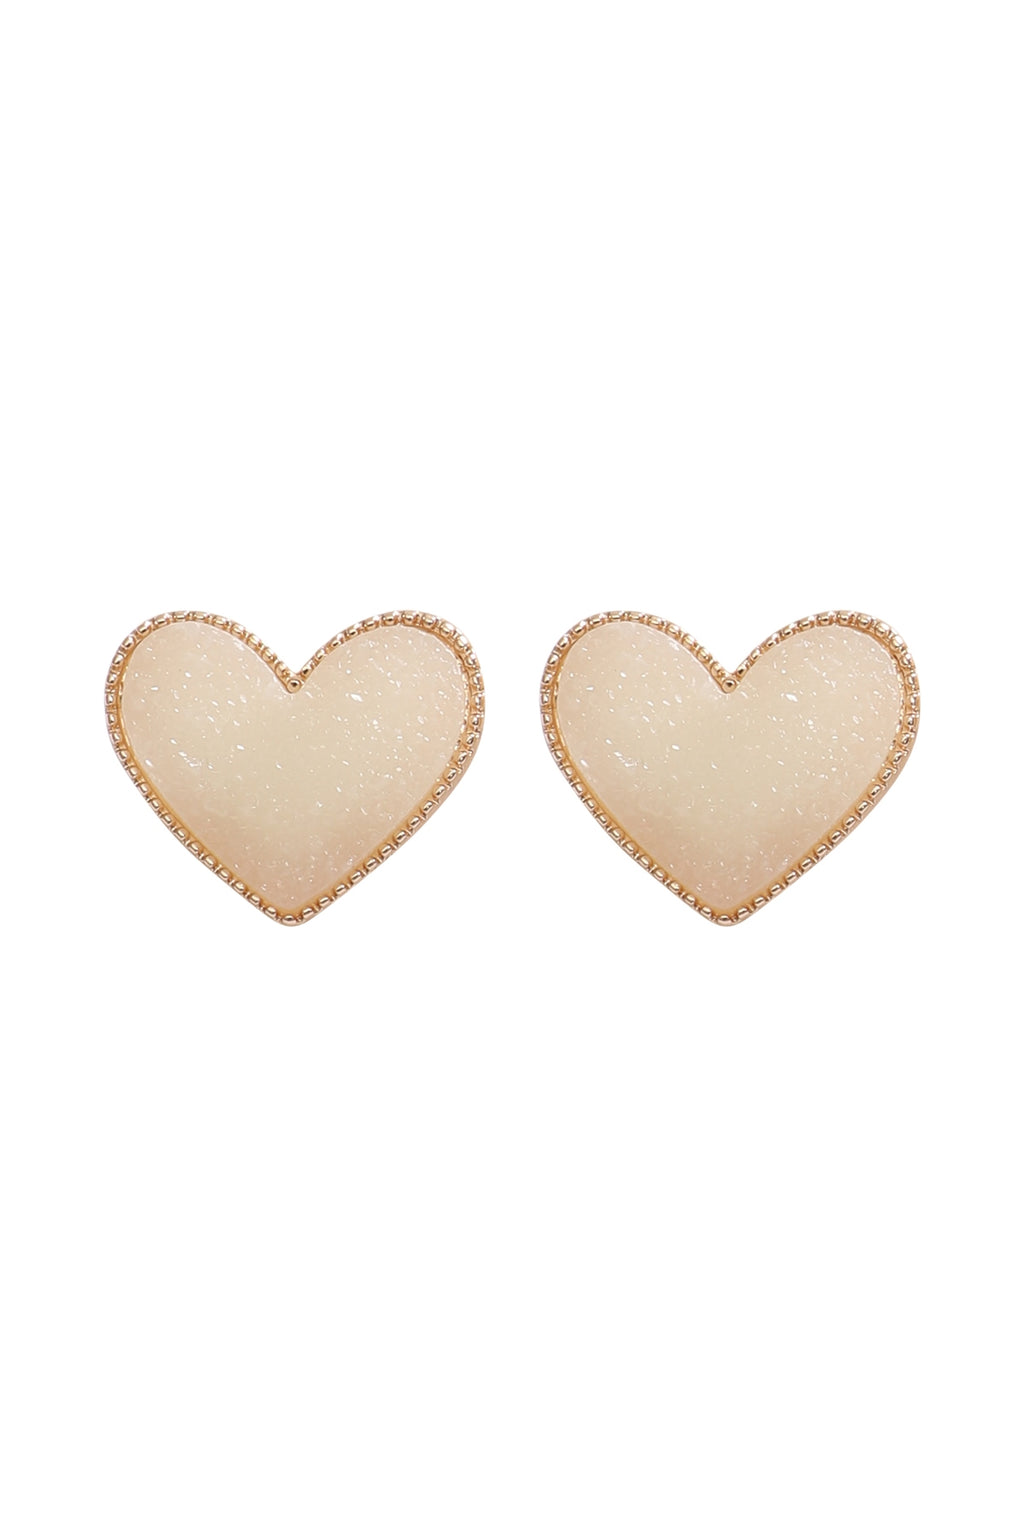 Heart Druzy Post Earrings White - Pack of 6